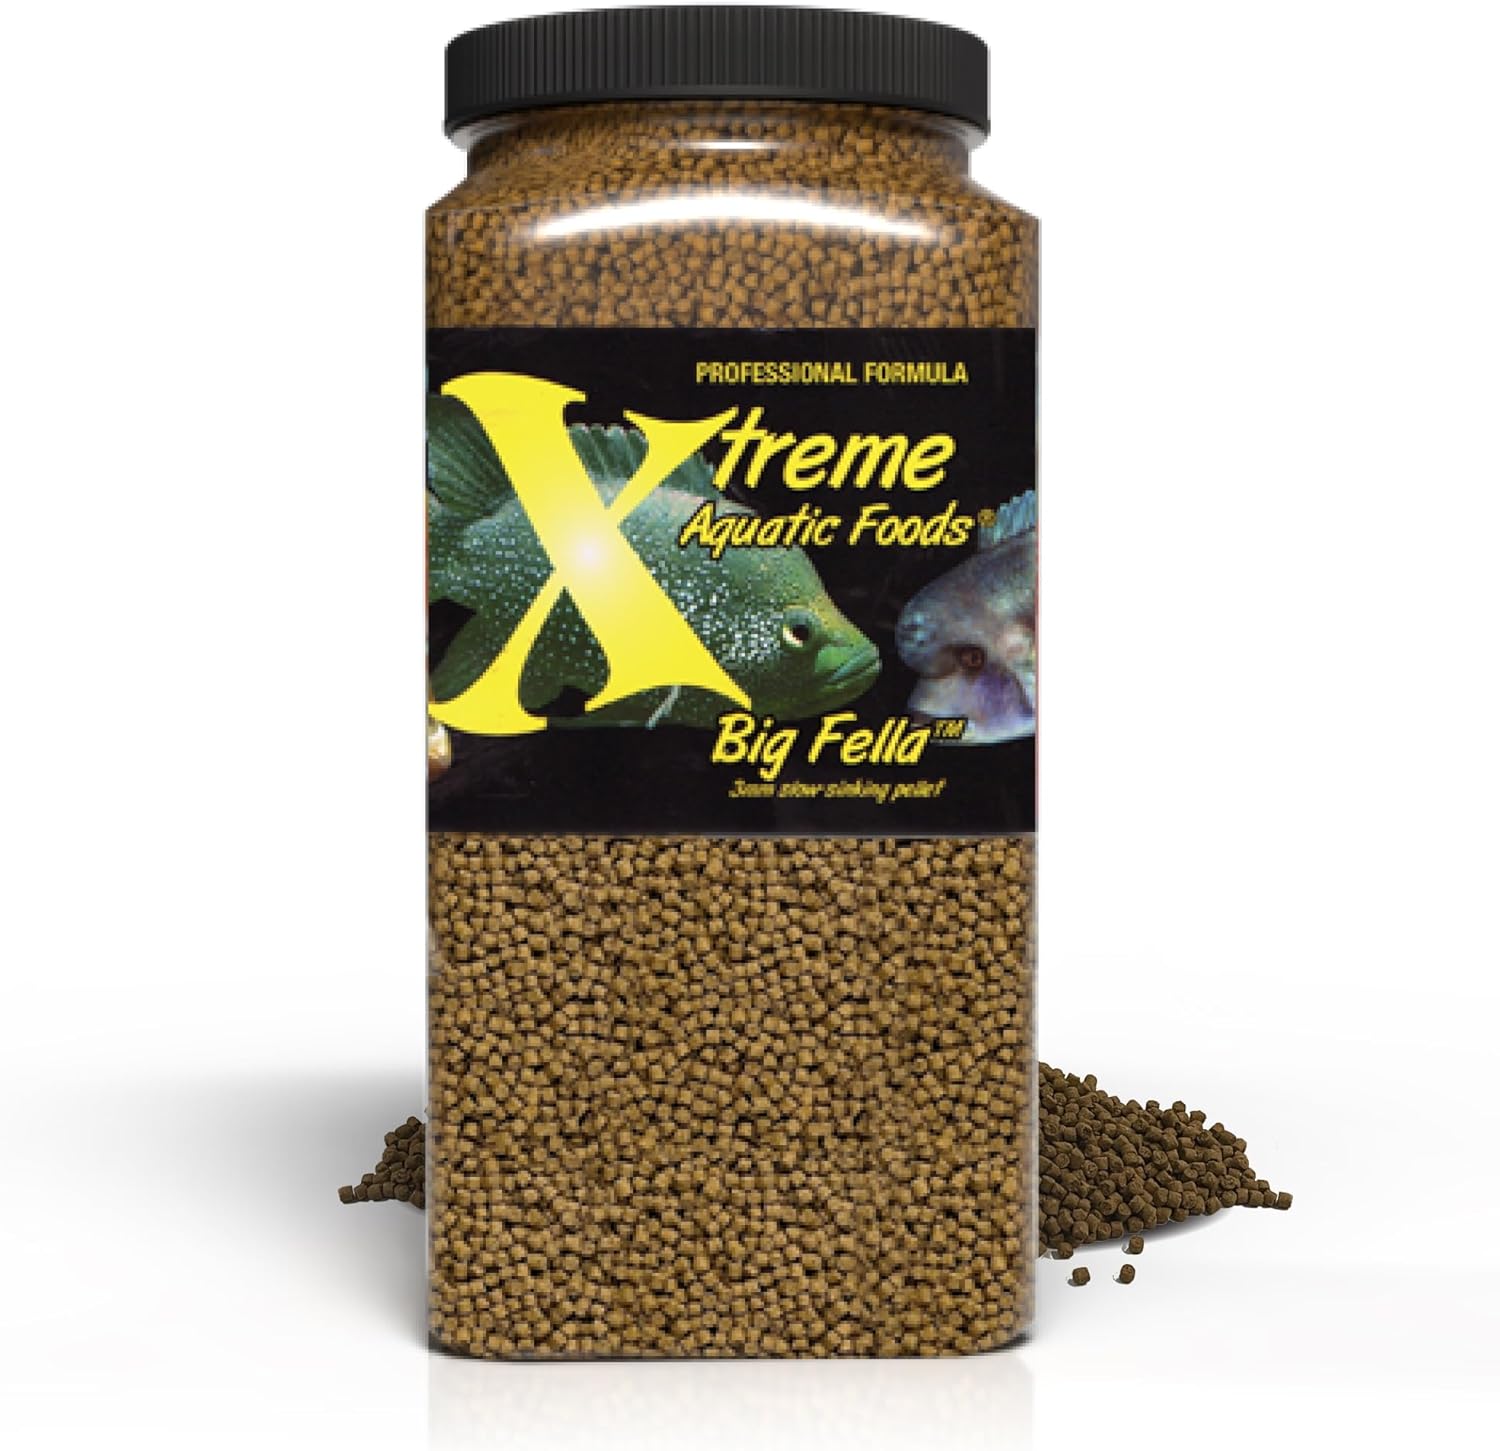 Xtreme Aquatic Foods Big Fella 3mm slow-sinking pellet 5 lbs (2268g) 893427001473 Super Cichlids